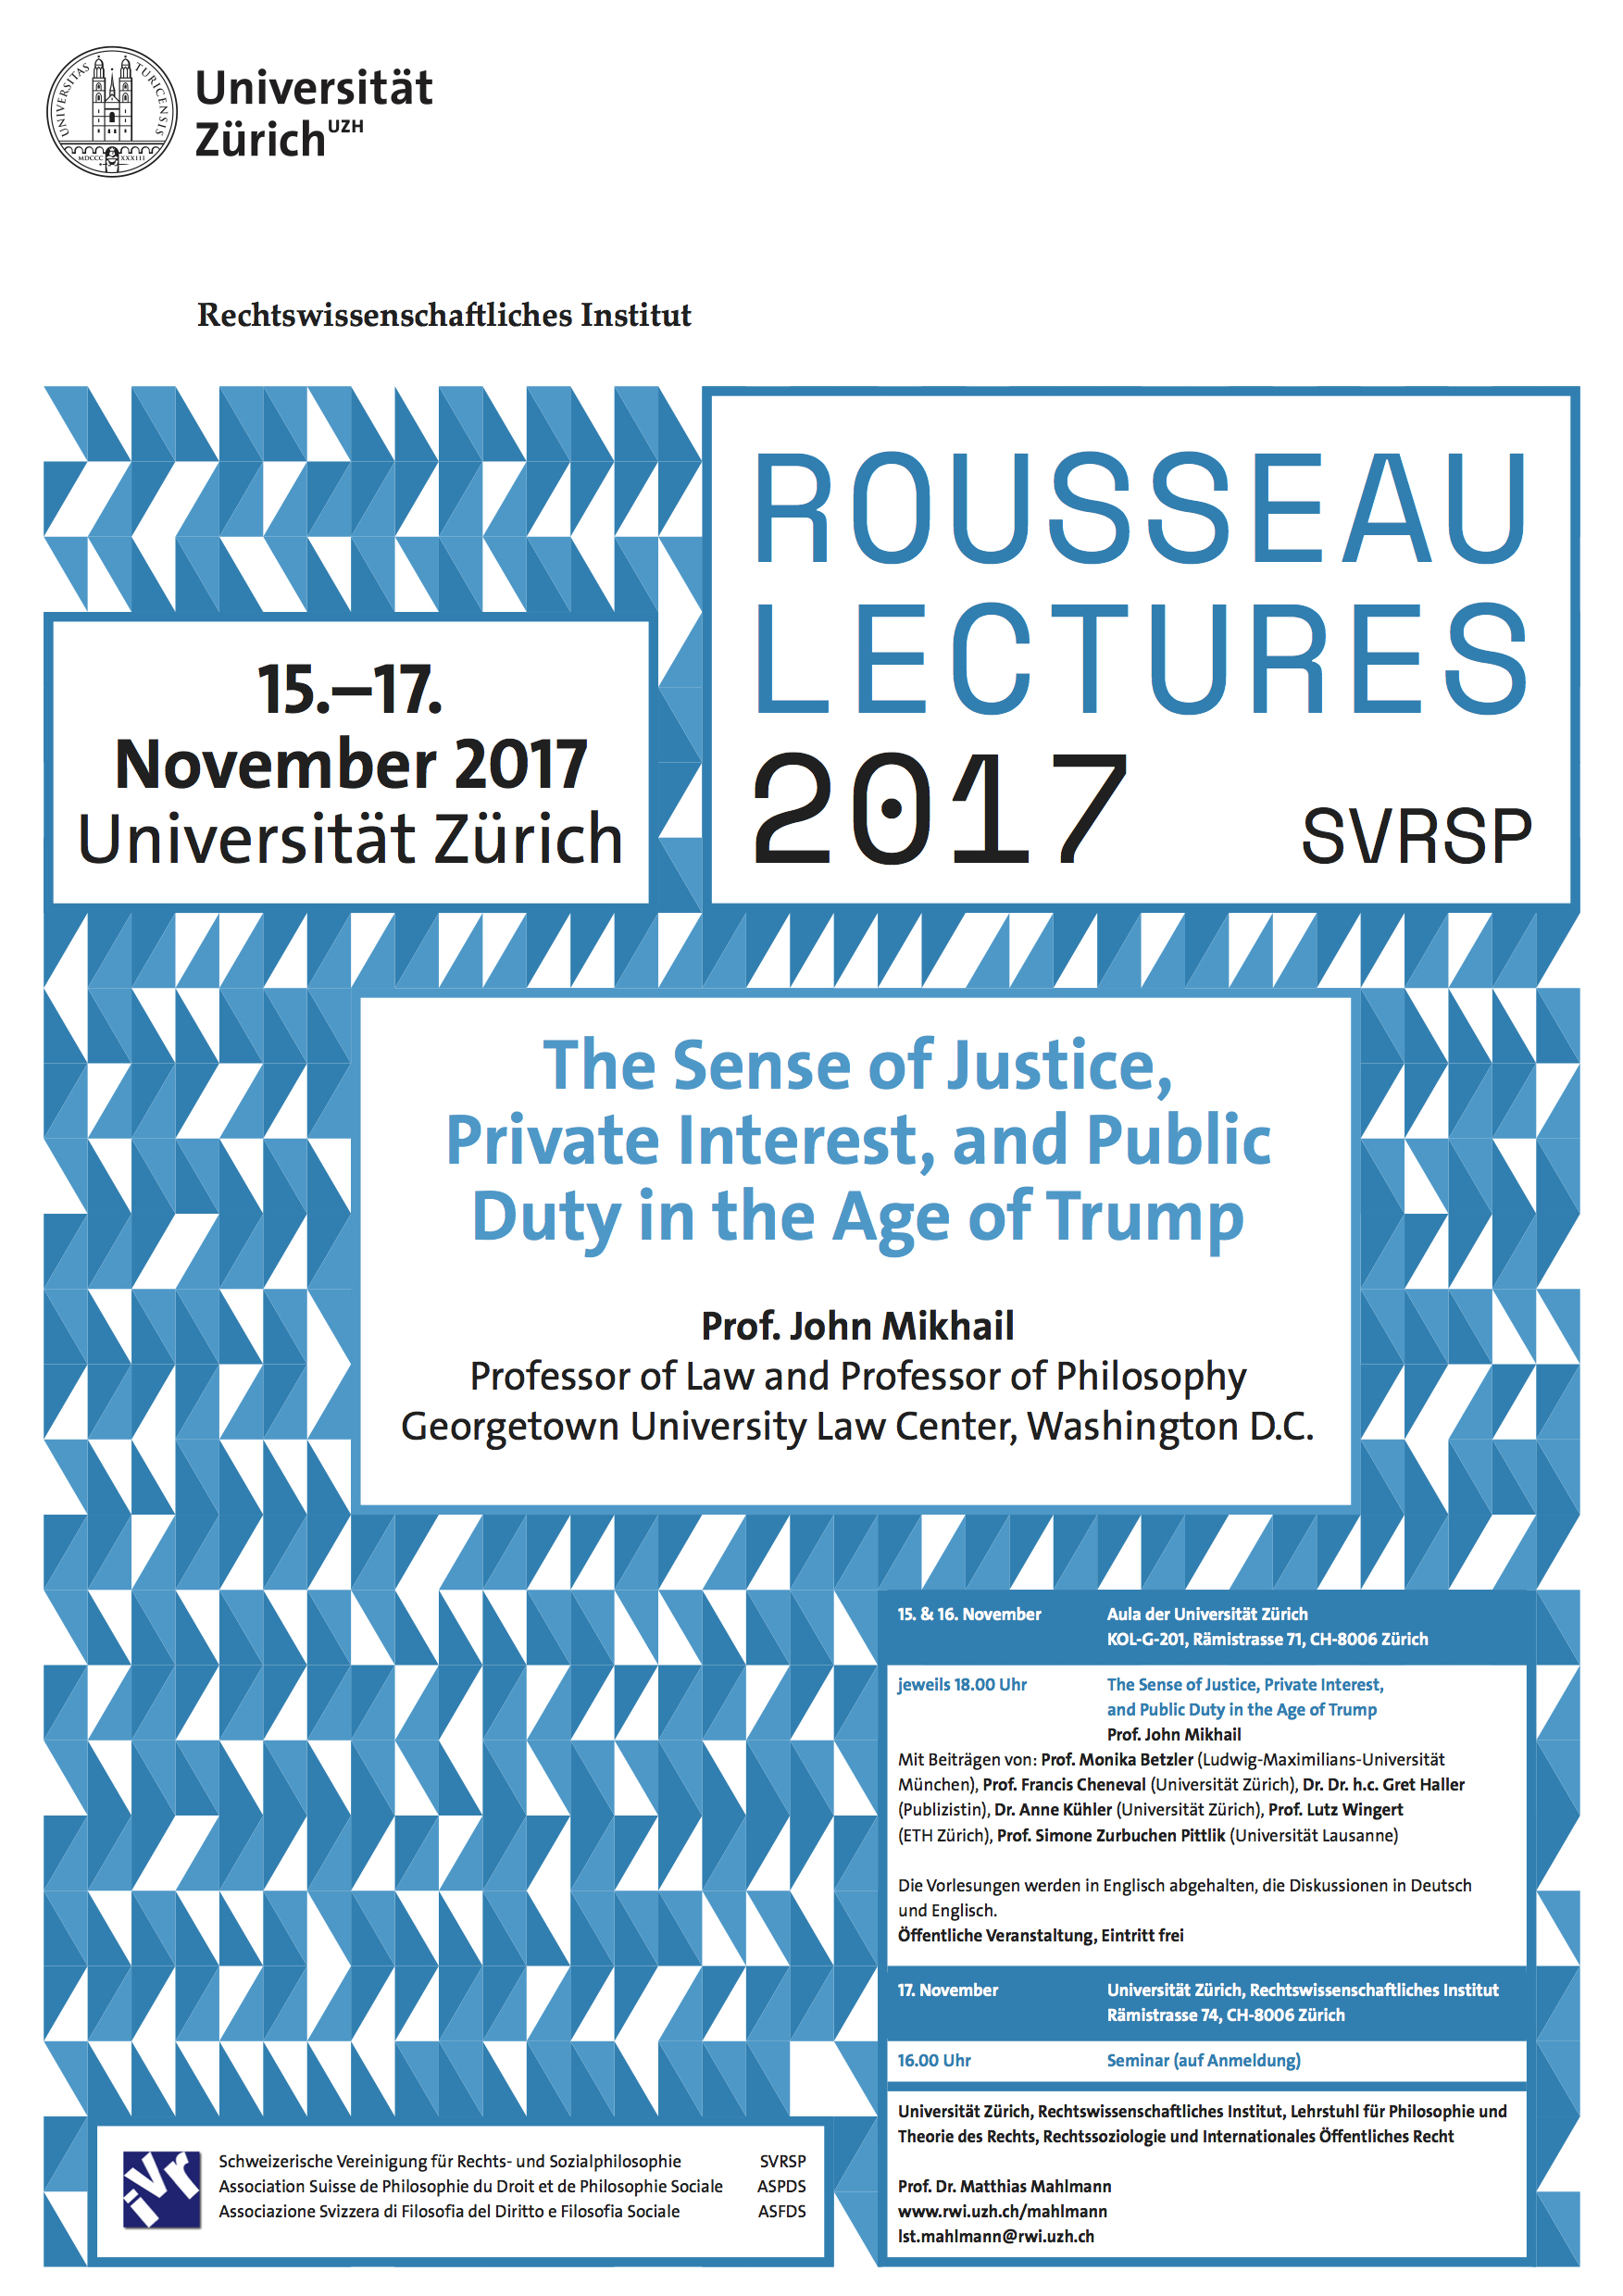 SVRSP Rousseau Lectures 2017